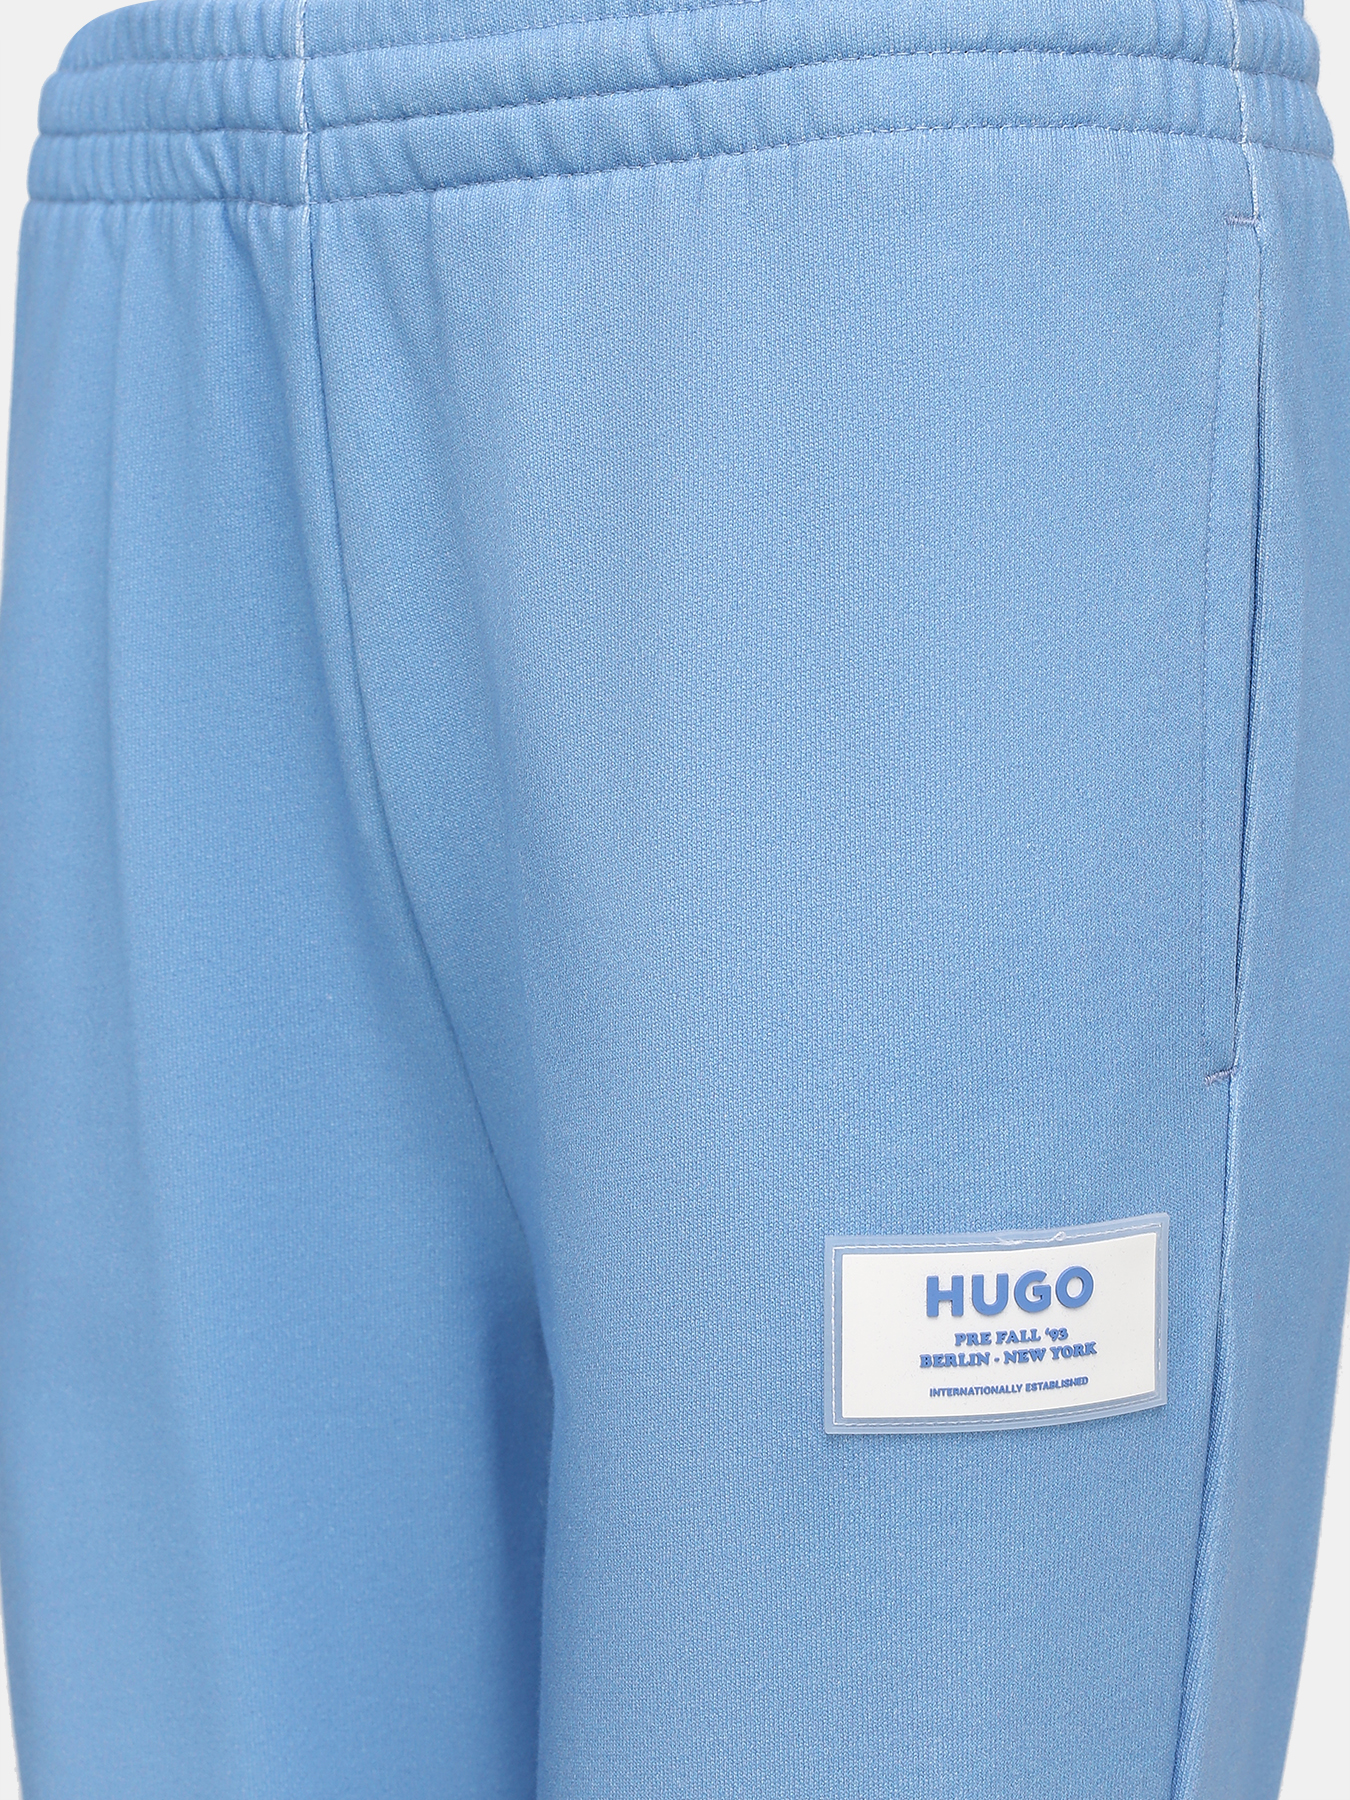 Спортивные брюки Najogger HUGO 420611-043, цвет мультиколор, размер 44-46 - фото 2